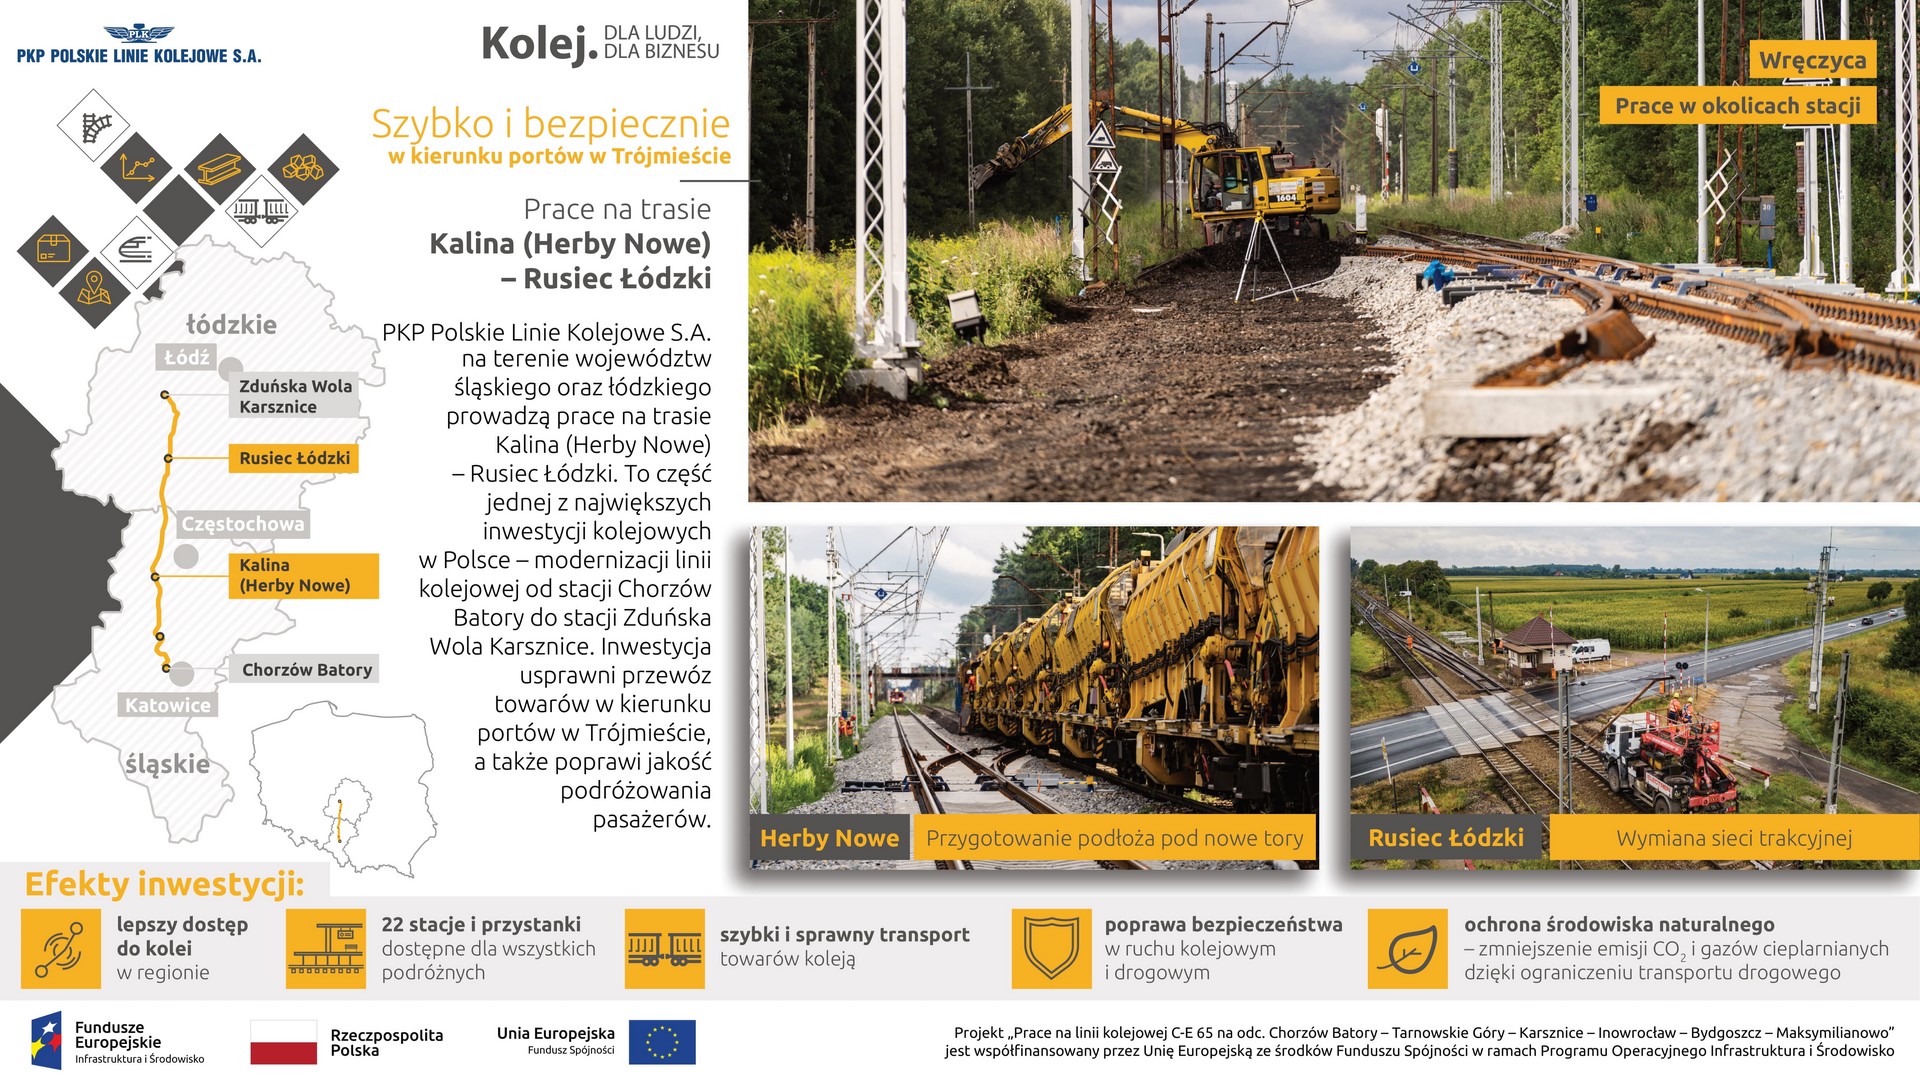 Infografika przedstawia 3 zdjęcia z prac budowlanych w Wręczycy, Herbach Nowych oraz. Ruścu Łódzkim. Po lewej znajduje się mapka z zaznaczonymi lokalizacjami inwestycji.